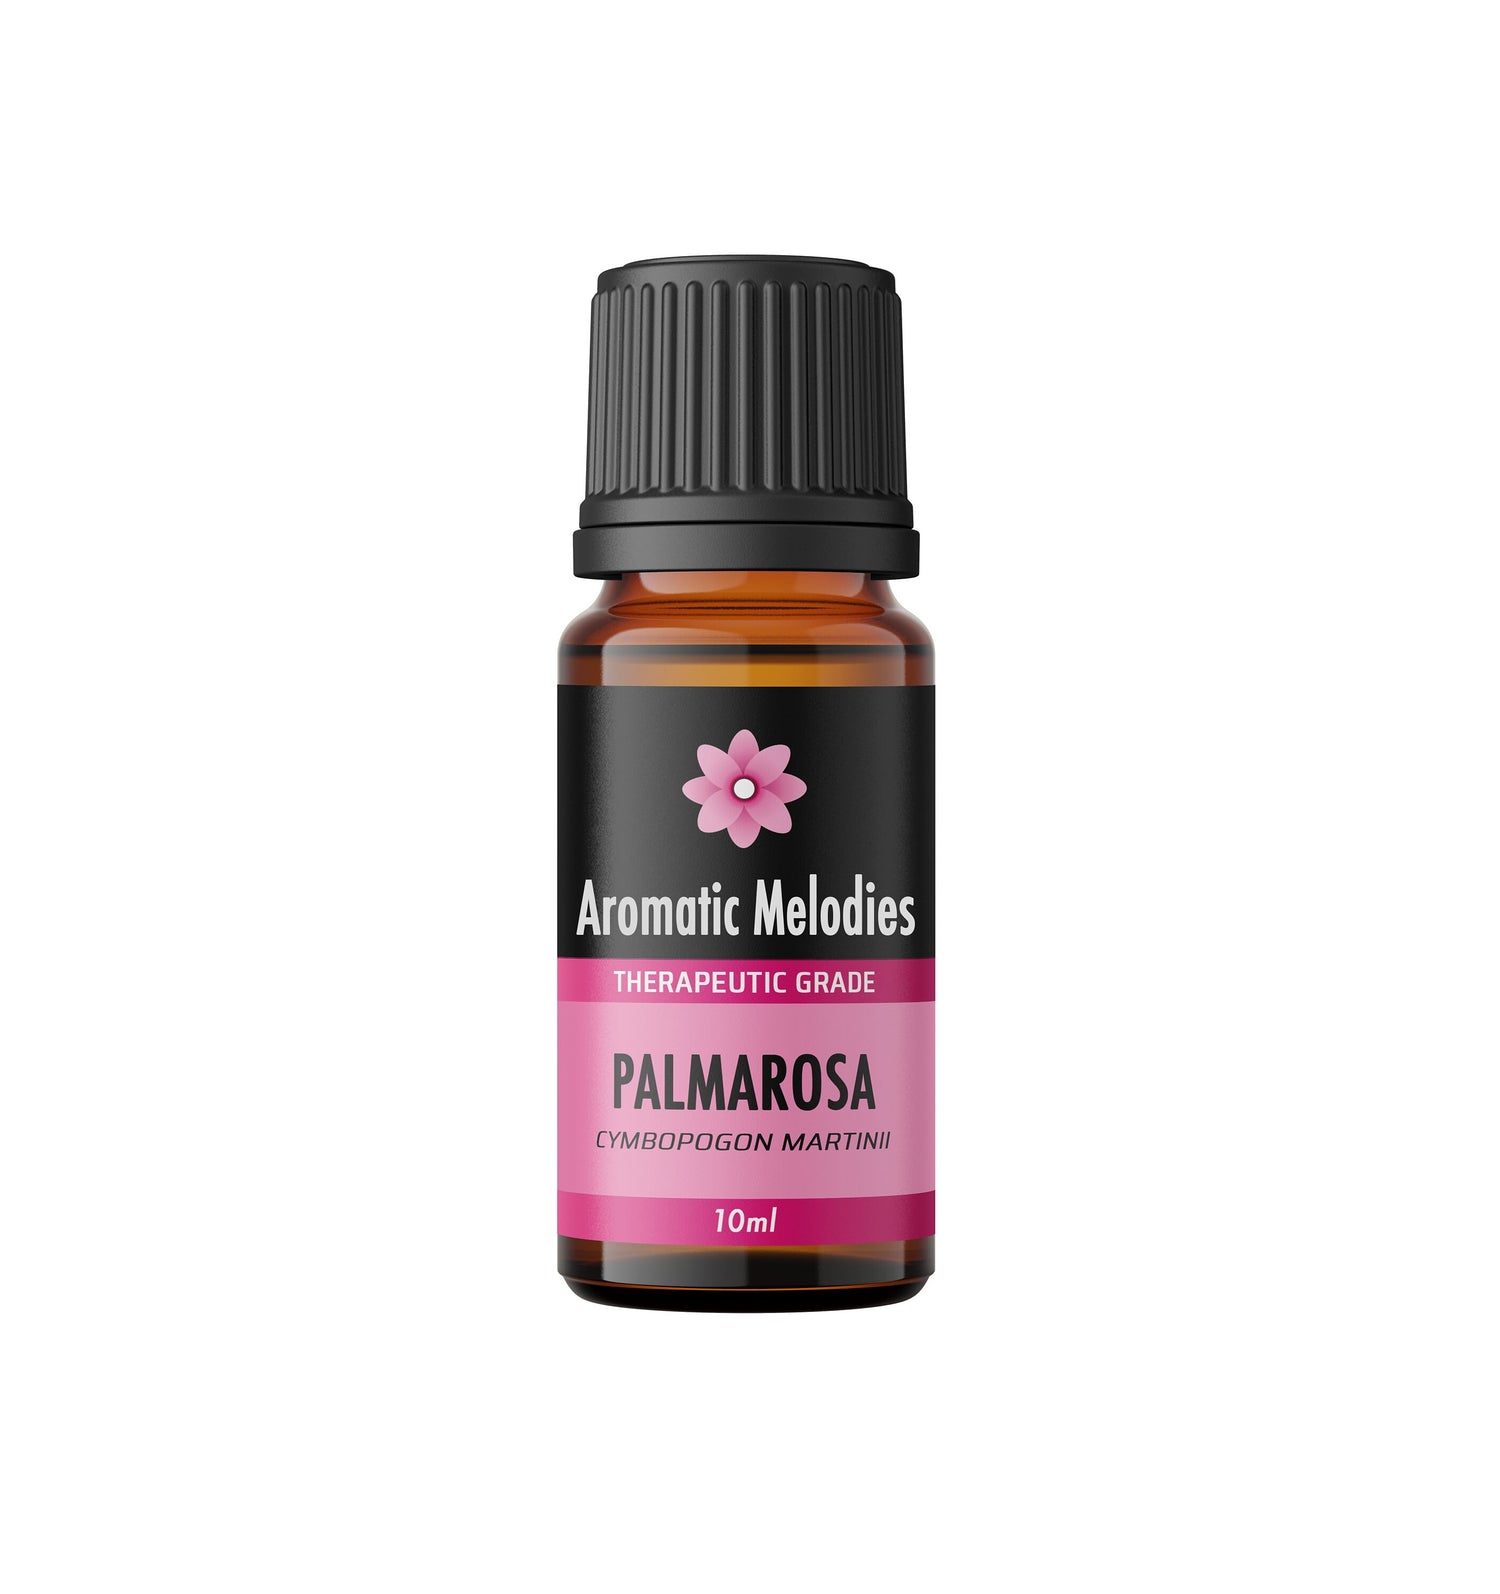 Palmarosa Essential Oil - Premium 100% Natural Therapeutic Grade - Oil Diffuser, Massage, Fragrance, Soap, Candles